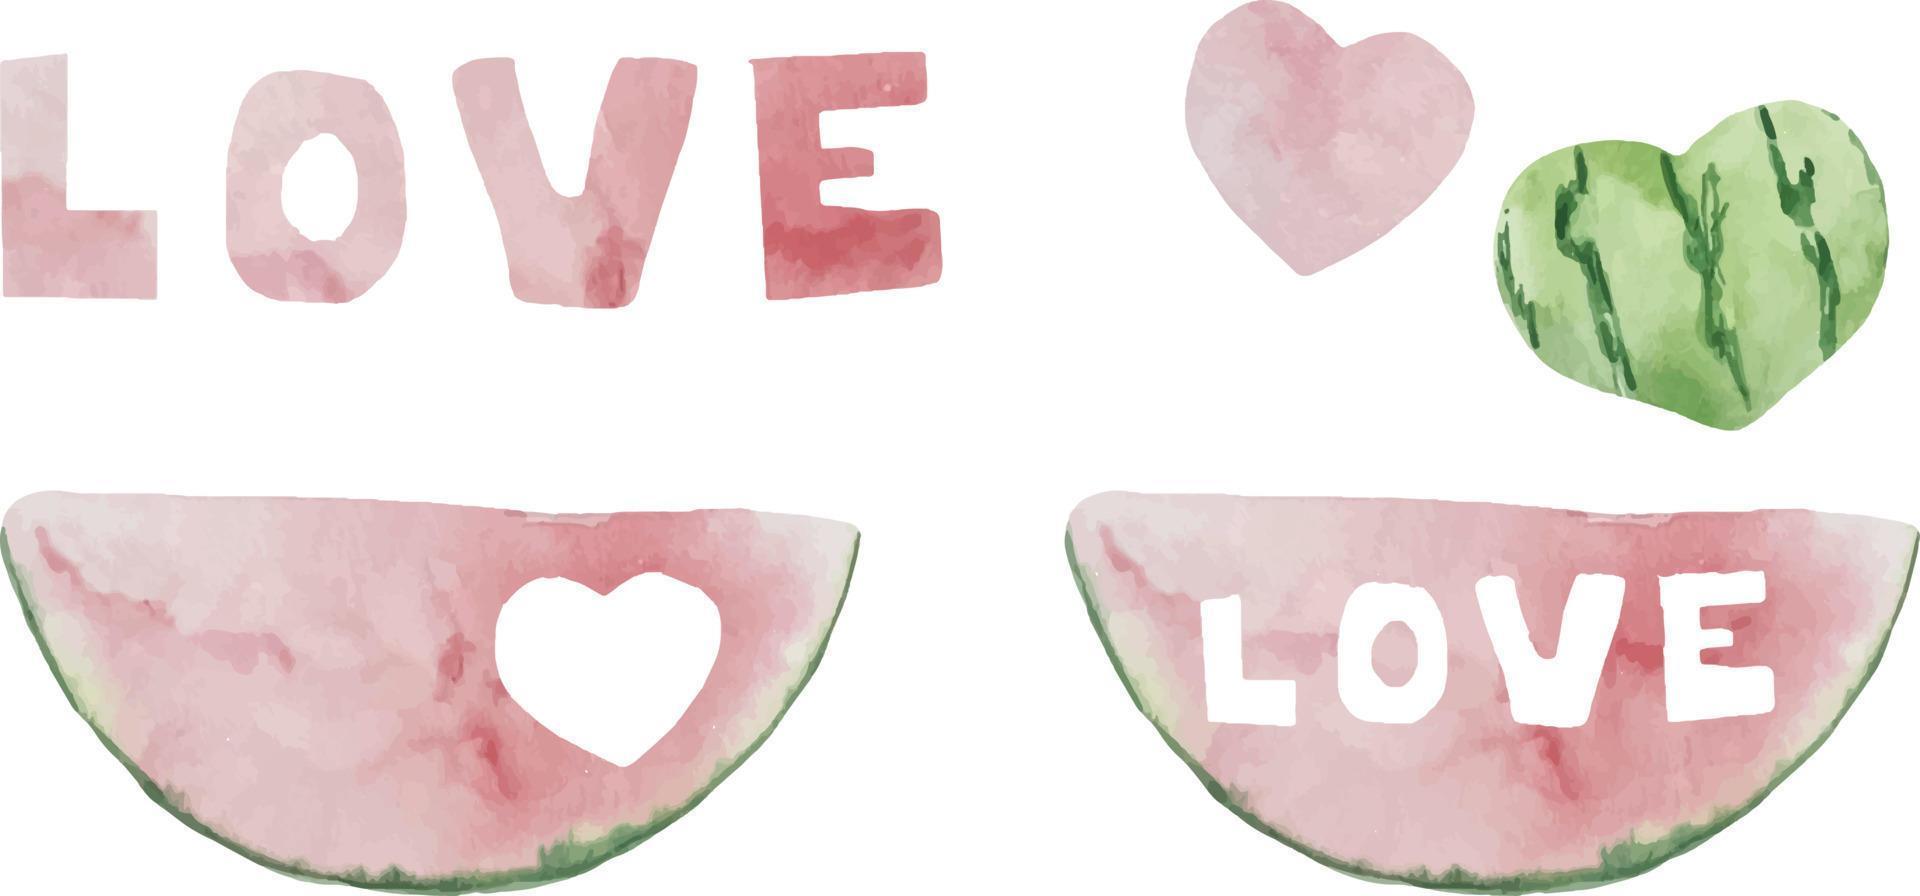 aquarel illustratie van watermeloen, een halve watermeloen, een stuk watermeloen, een plakje watermeloen. watermeloen liefde en harten vector